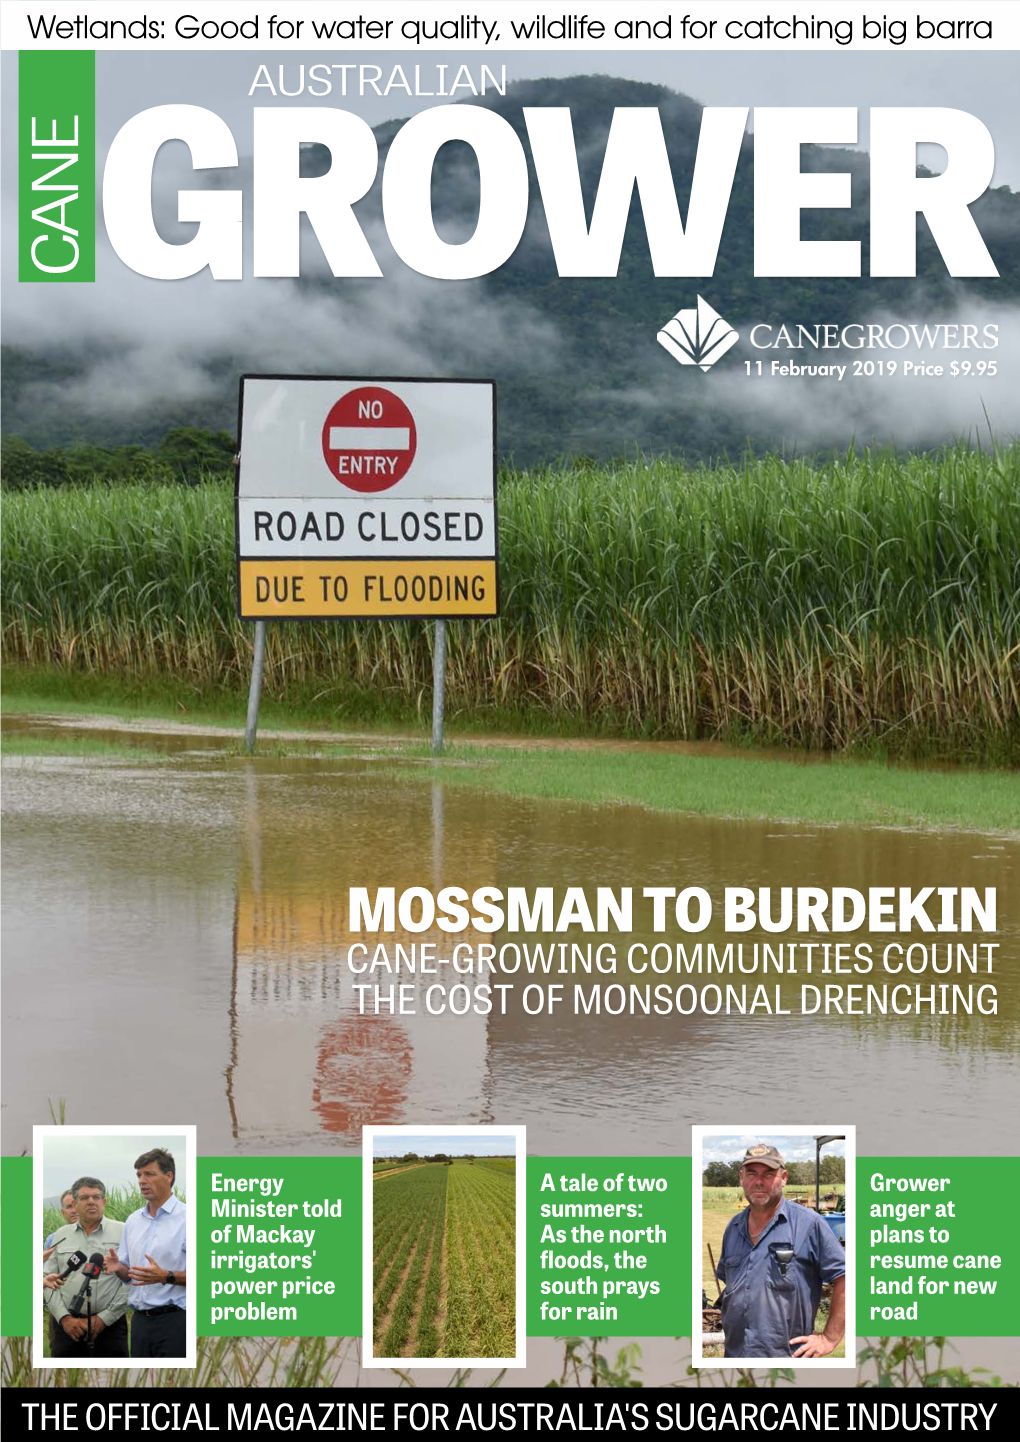 Mossman to Burdekin Cane-Growing Communities Count the Cost of Monsoonal Drenching